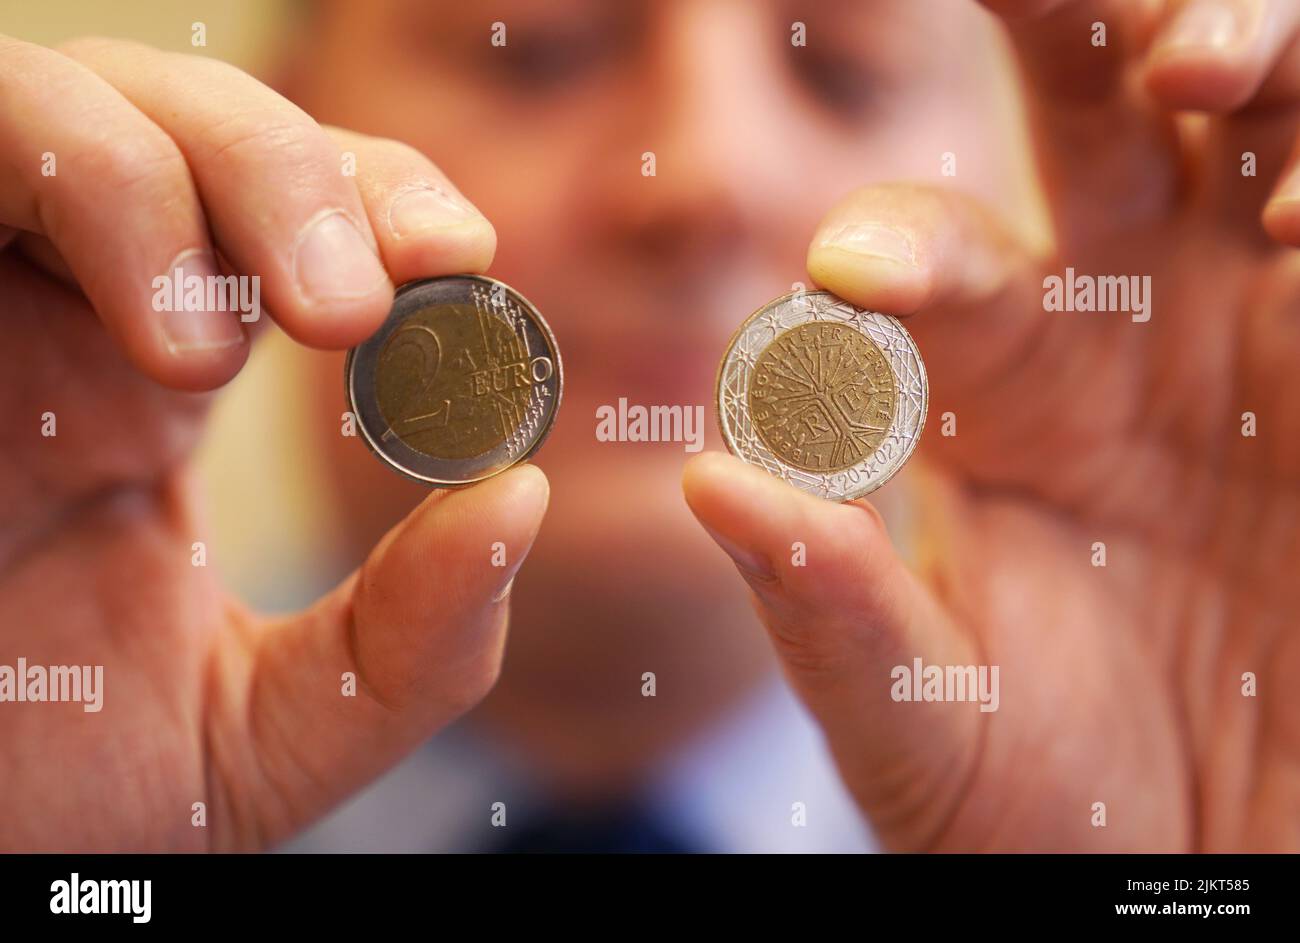 Inspektor Sean Earley zeigt gefälschte €2-Münzen am Bahnhof Clontarf Garda in Dublin. Beamte des Bezirks Raheny Garda haben eine Untersuchung über den mutmaßlichen Umlauf gefälschter zwei-Euro-Münzen eingeleitet und Ende Juli eine Reihe von Durchsuchungen durchgeführt. Bei diesen Durchsuchungen wurden Münzen mit einem scheinbaren Nennwert von 2.920 Euro beschlagnahmt. Bilddatum: Mittwoch, 3. August 2022. Stockfoto